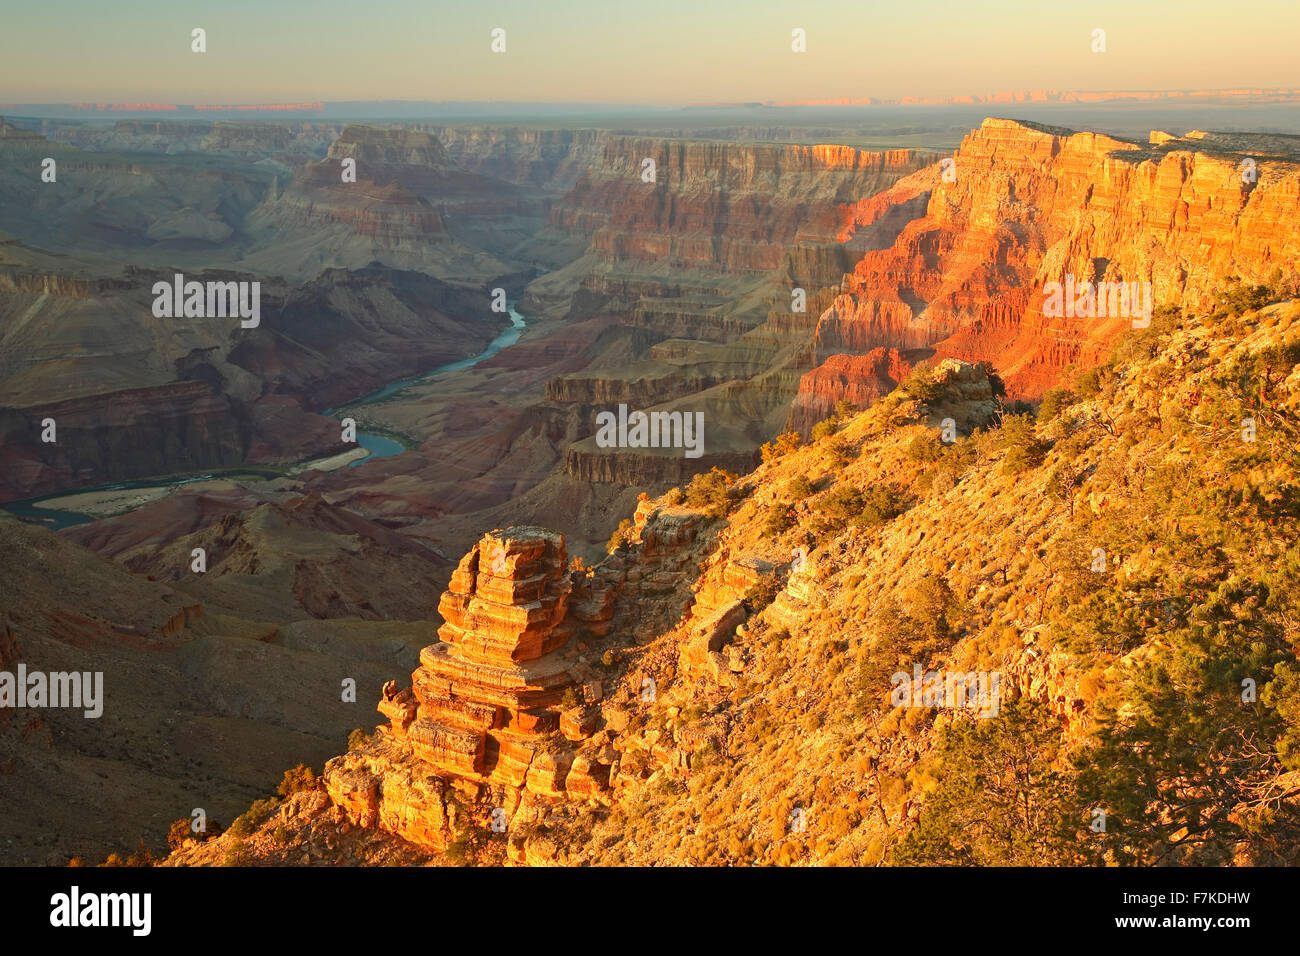 Il fiume Colorado e le pareti del canyon dalla vista del deserto si affacciano, il Parco Nazionale del Grand Canyon, Arizona USA Foto Stock